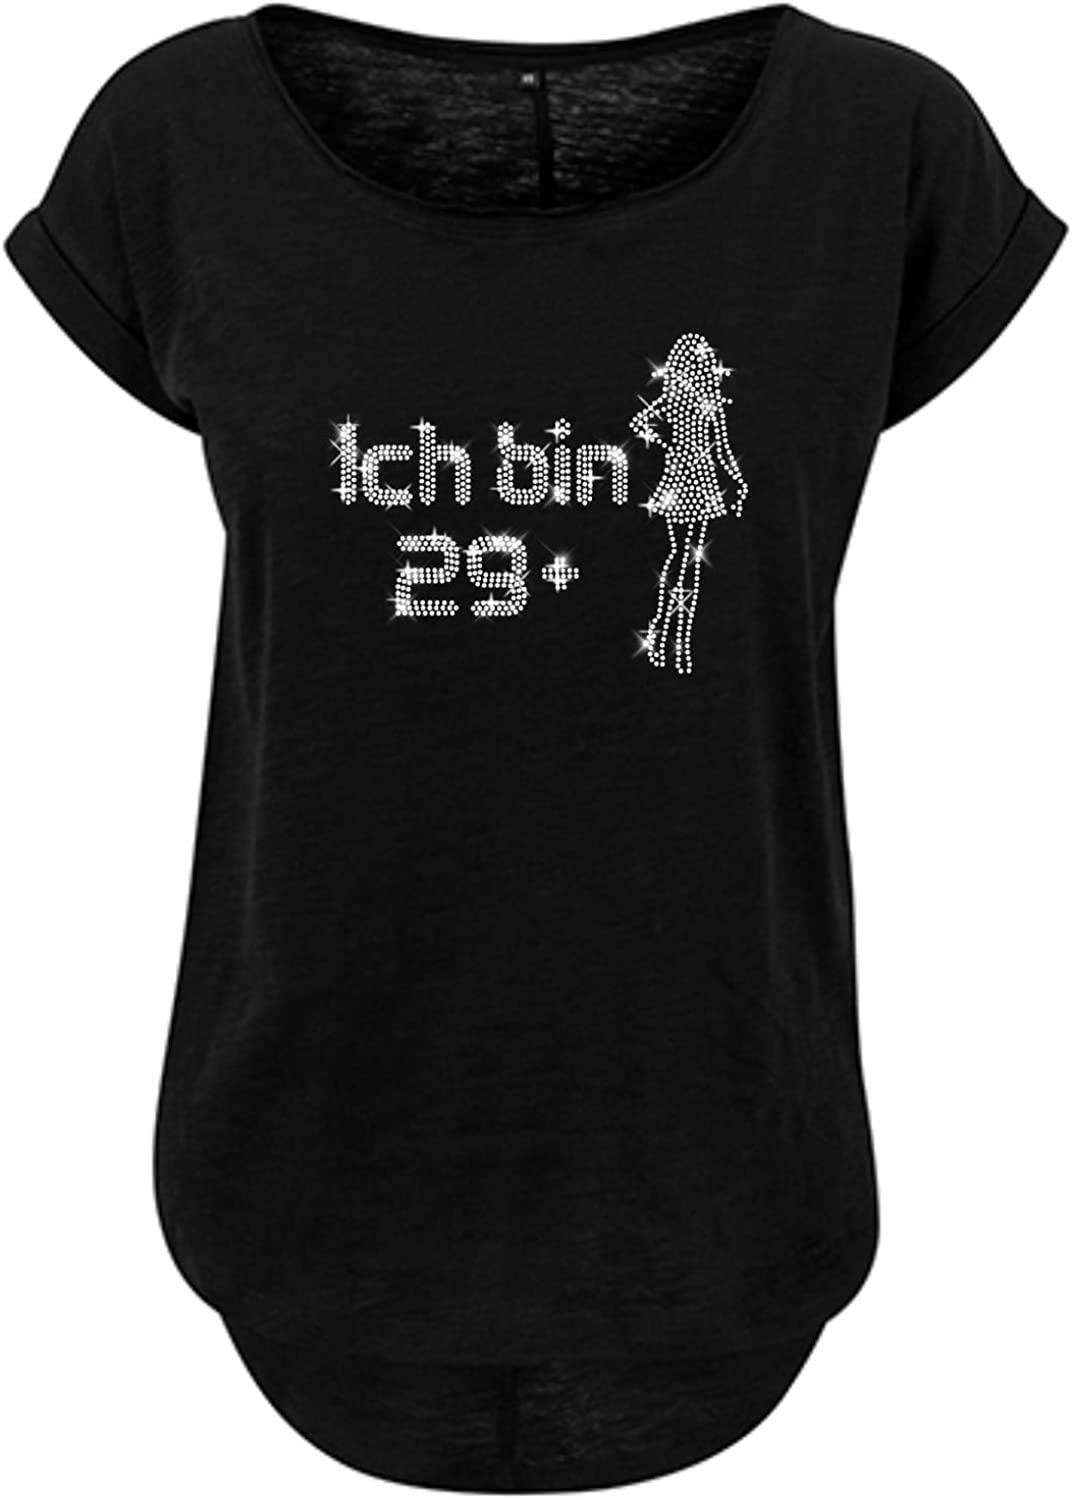 Blingeling® 30. Geburtstag Damen T-Shirt mit Strass Spruch: Bin 29+